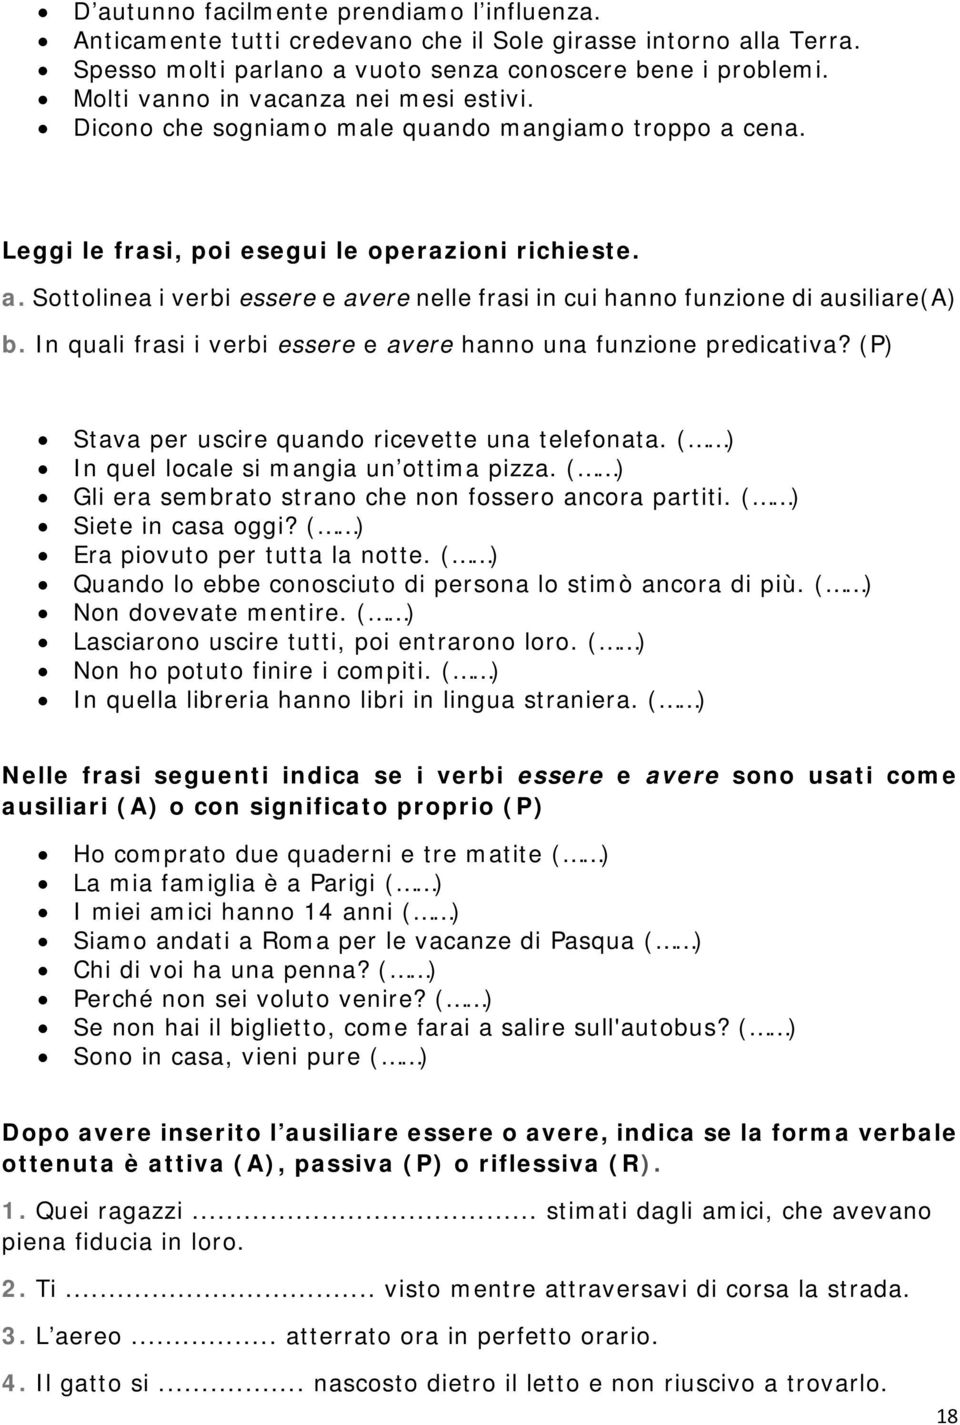 Quaderno Di Italiano Pdf Free Download